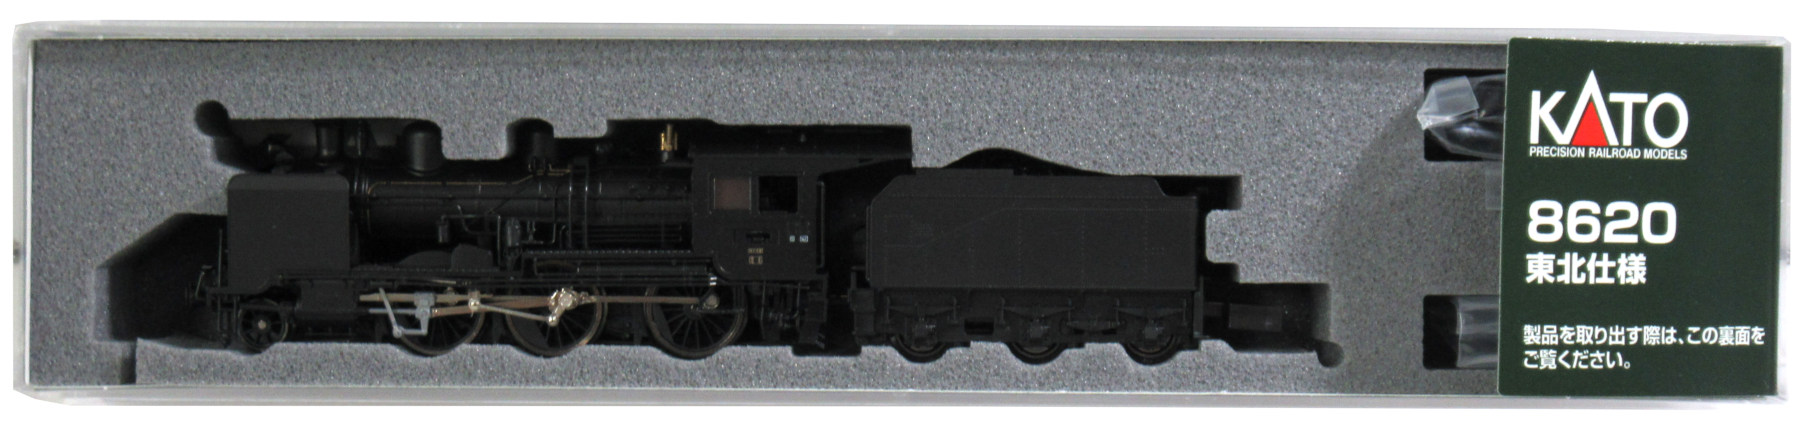 公式]鉄道模型(JR・国鉄 形式別(N)、蒸気機関車、8620)カテゴリ